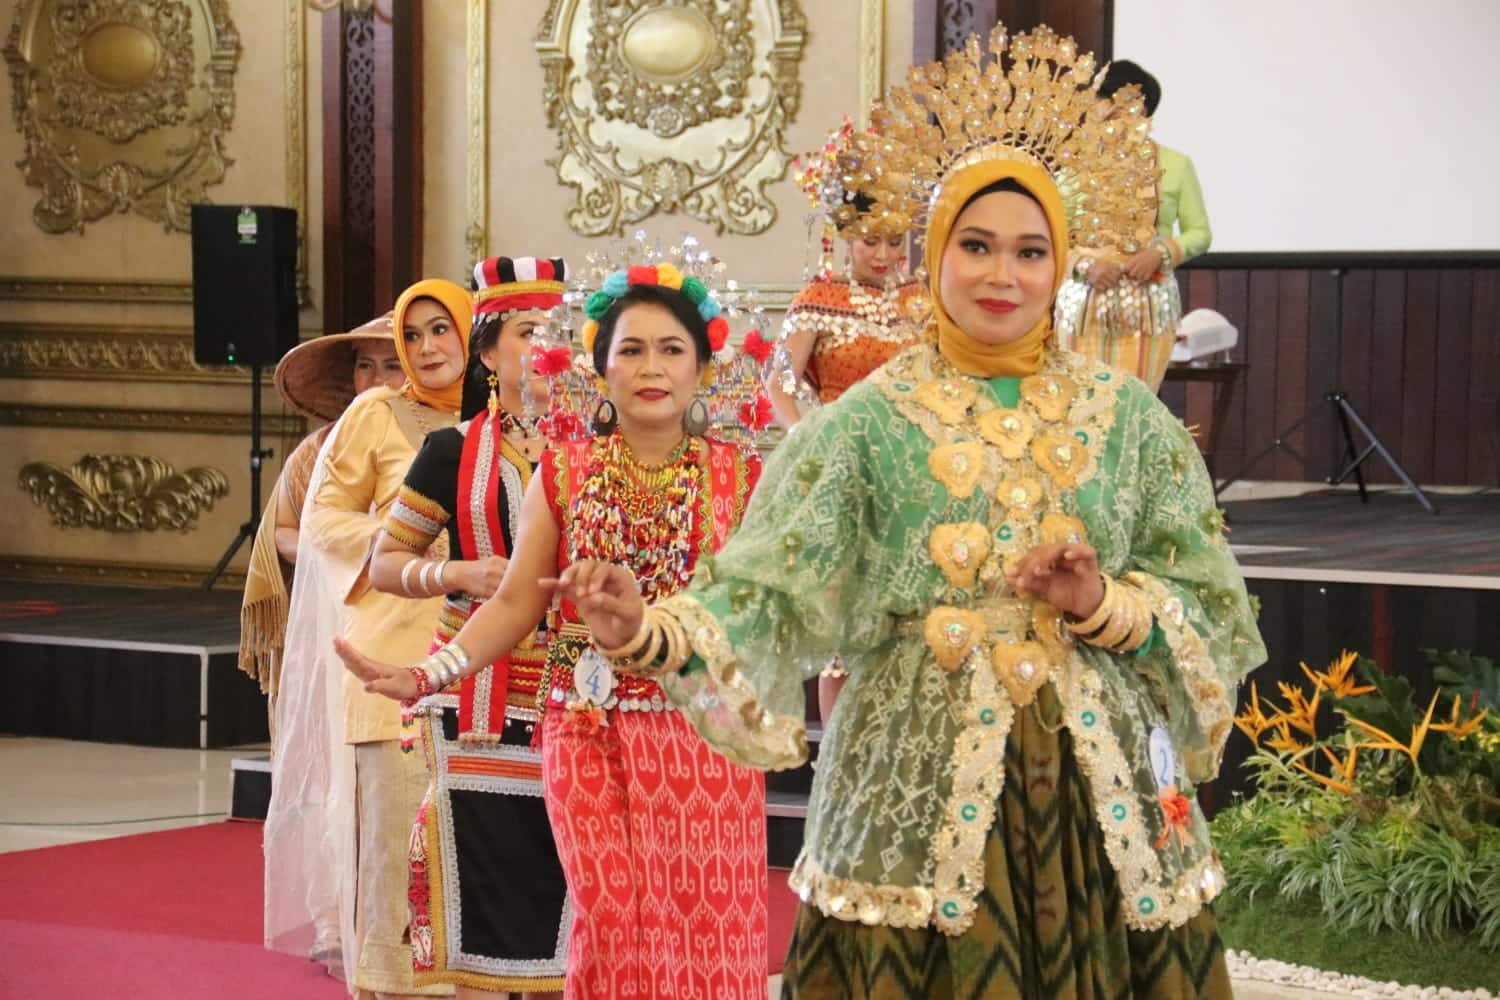 Lomba Busana Adat Daerah (Bukan Pakaian Pengantin) ini diselenggarakan di Aula Pendopo Gubernur Provinsi Kalimantan Barat, Kamis (04/08/2022). (Foto: Istimewa)